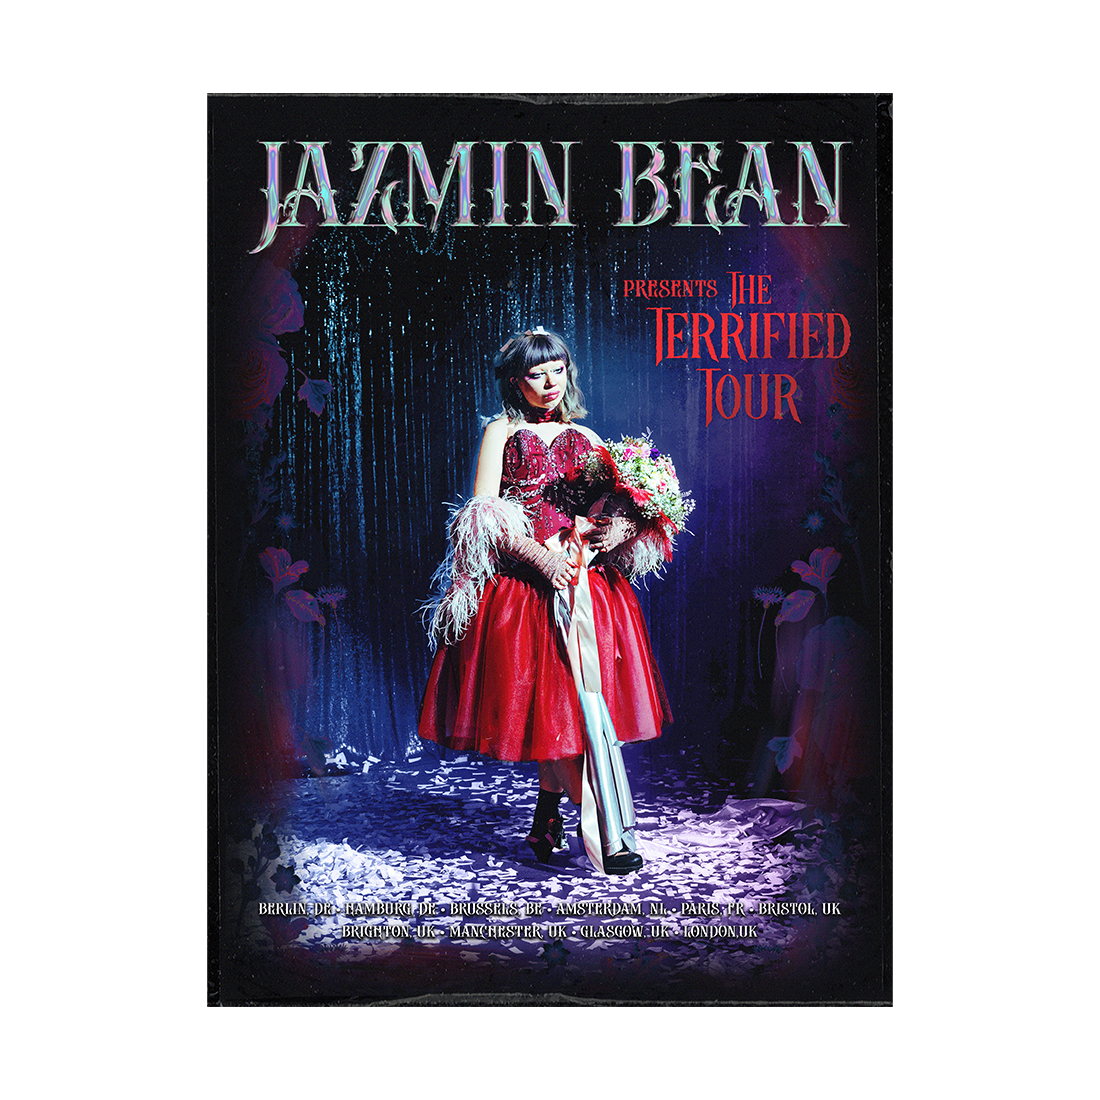 Jazmin Bean - The Terrified Tour Litho Poster